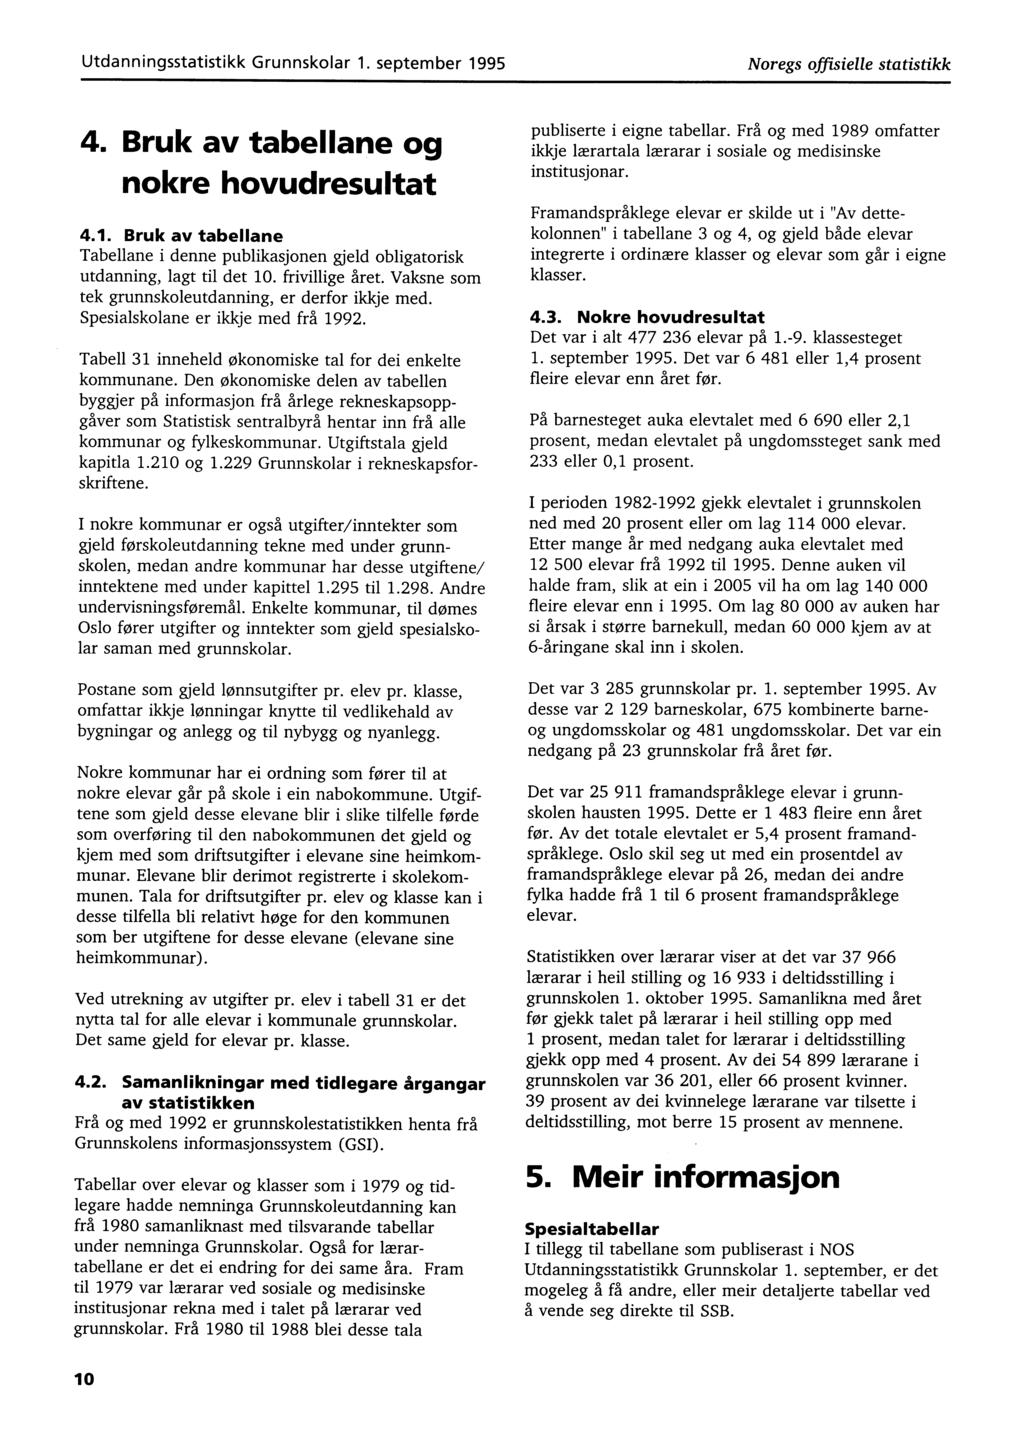 Utdanningsstatistikk Grunnskolar 1. september 1995 Noregs offisielle statistikk 4. Bruk av tabellane og nokre hovudresultat 4.1. Bruk av tabellane Tabellane i denne publikasjonen gjeld obligatorisk utdanning, lagt til det 10.